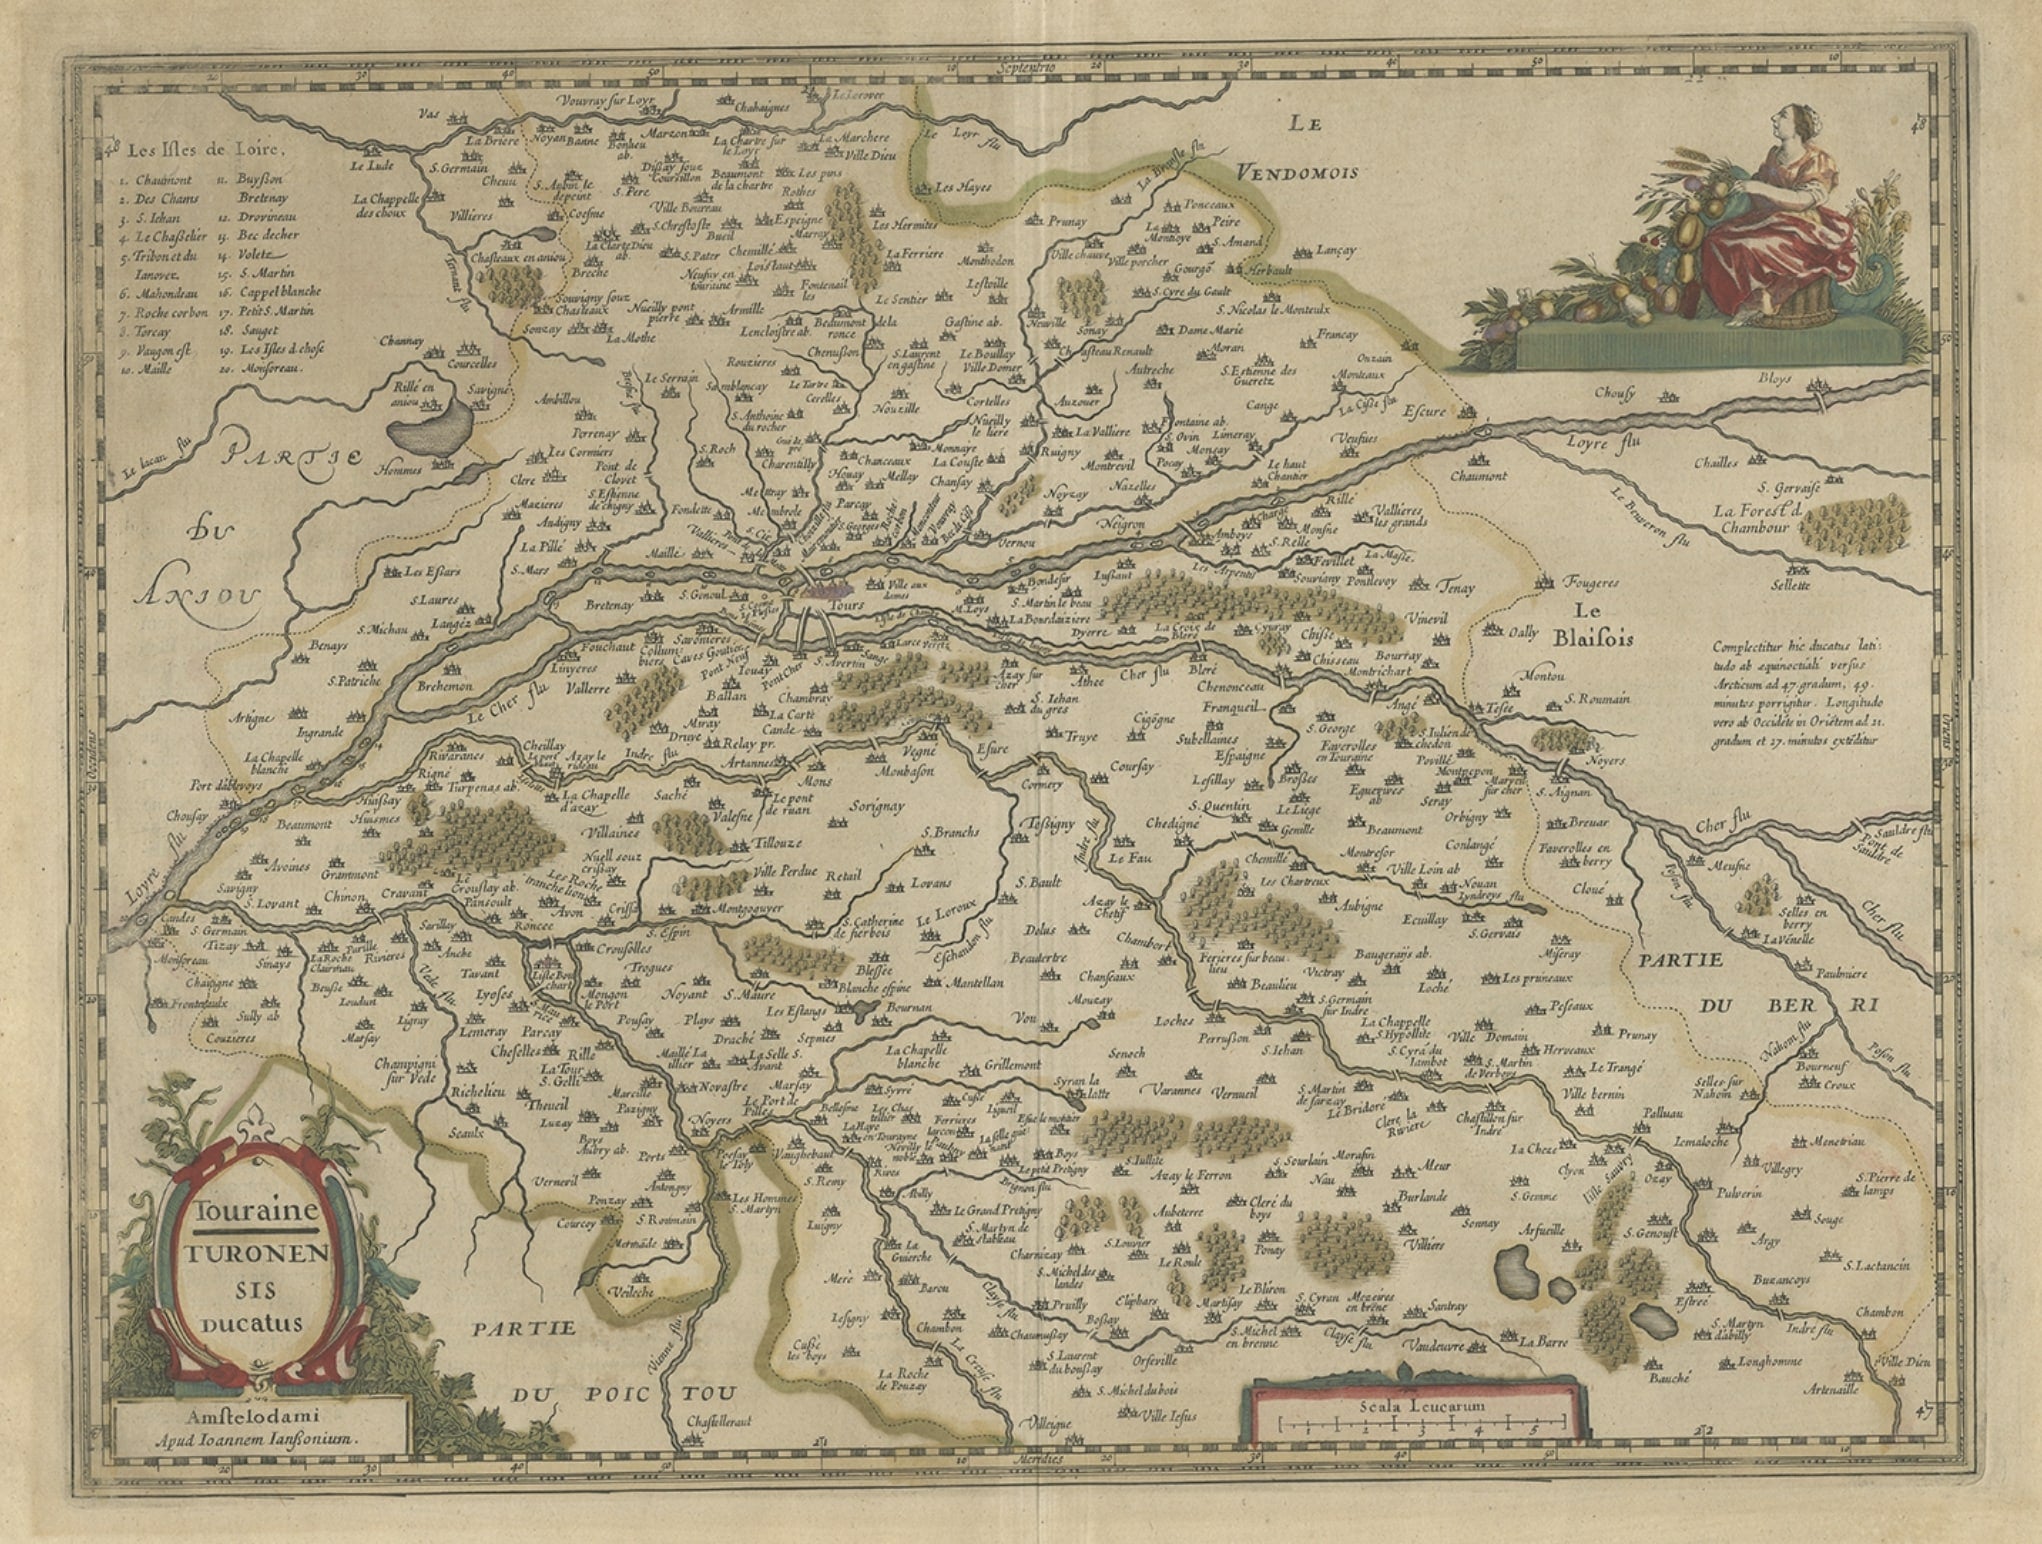 Antike Karte der Region Touraine in Frankreich von Janssonius, 1657